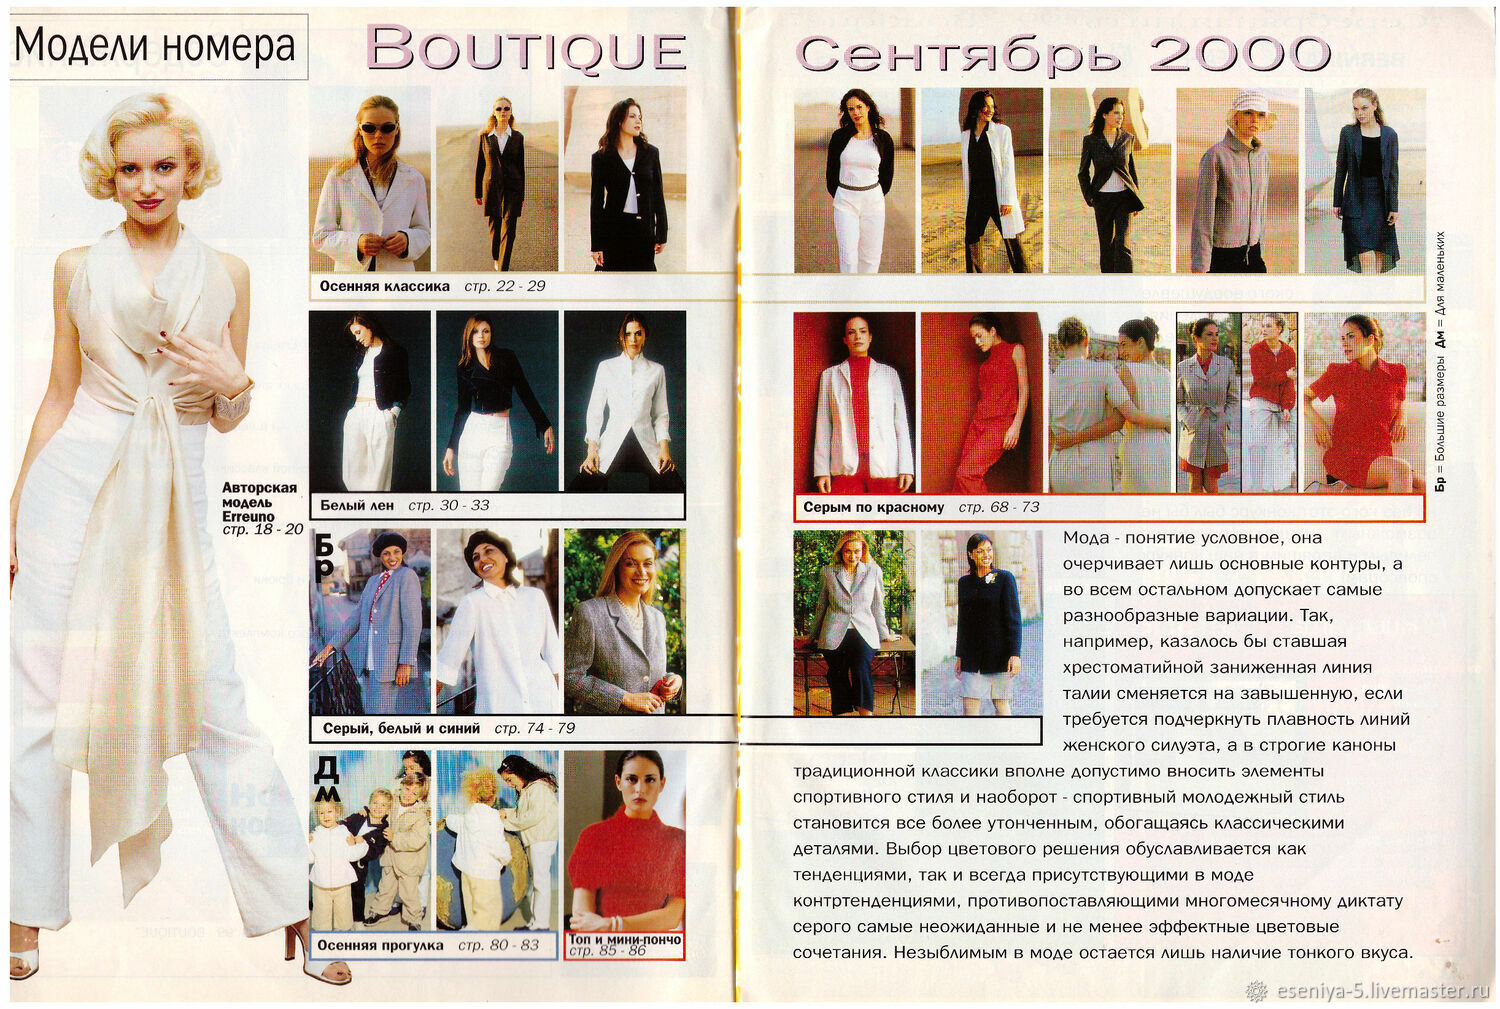 Boutique итальянская. Журналы моды 2000. Журнал итальянской моды Boutique. Boutique сентябрь 2000. Журнал Boutique итальянская мода - октябрь 2000.